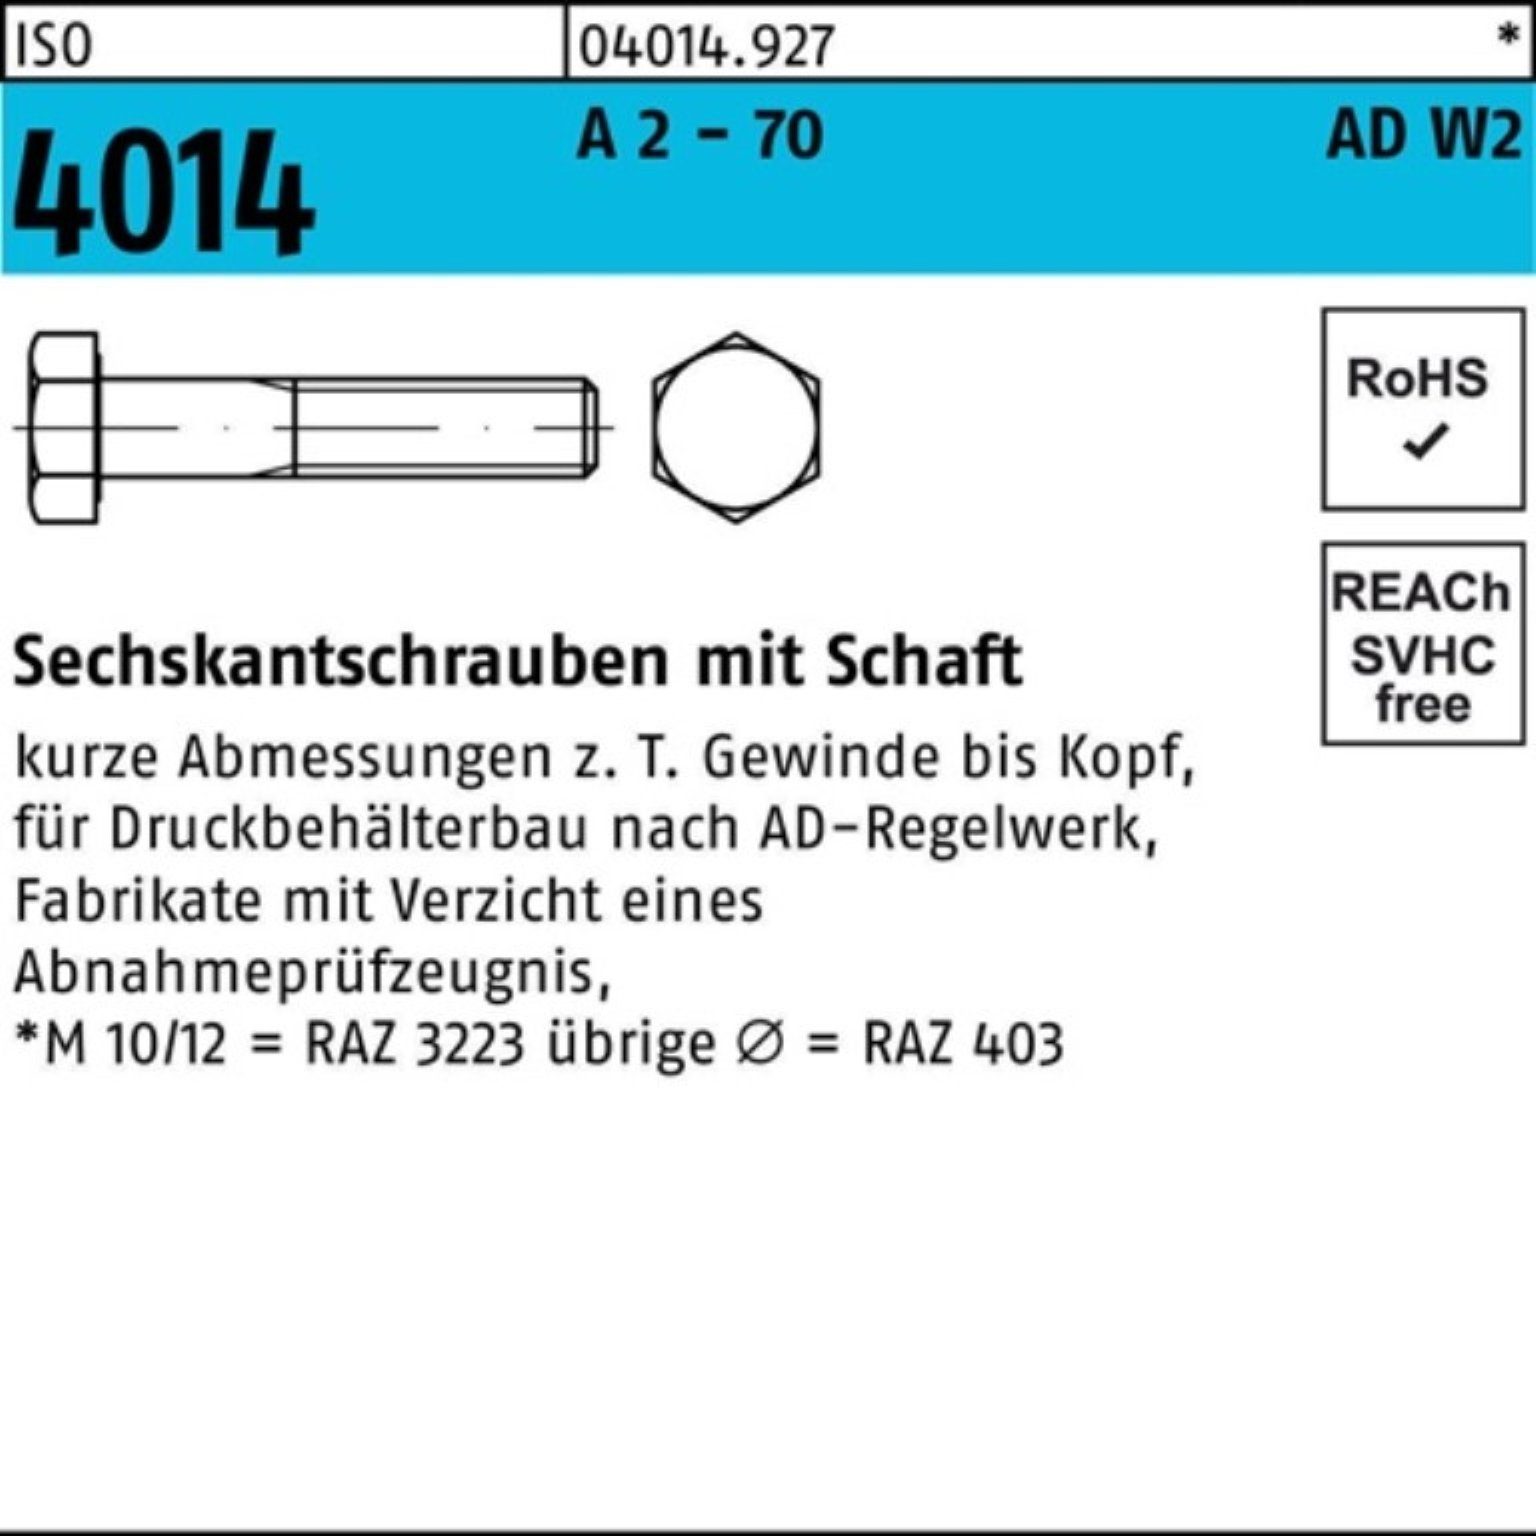 2 AD-W2 Sechskantschraube 100er A 4014 55 25 Schaft 70 Pack Sechskantschraube Bufab - M16x ISO